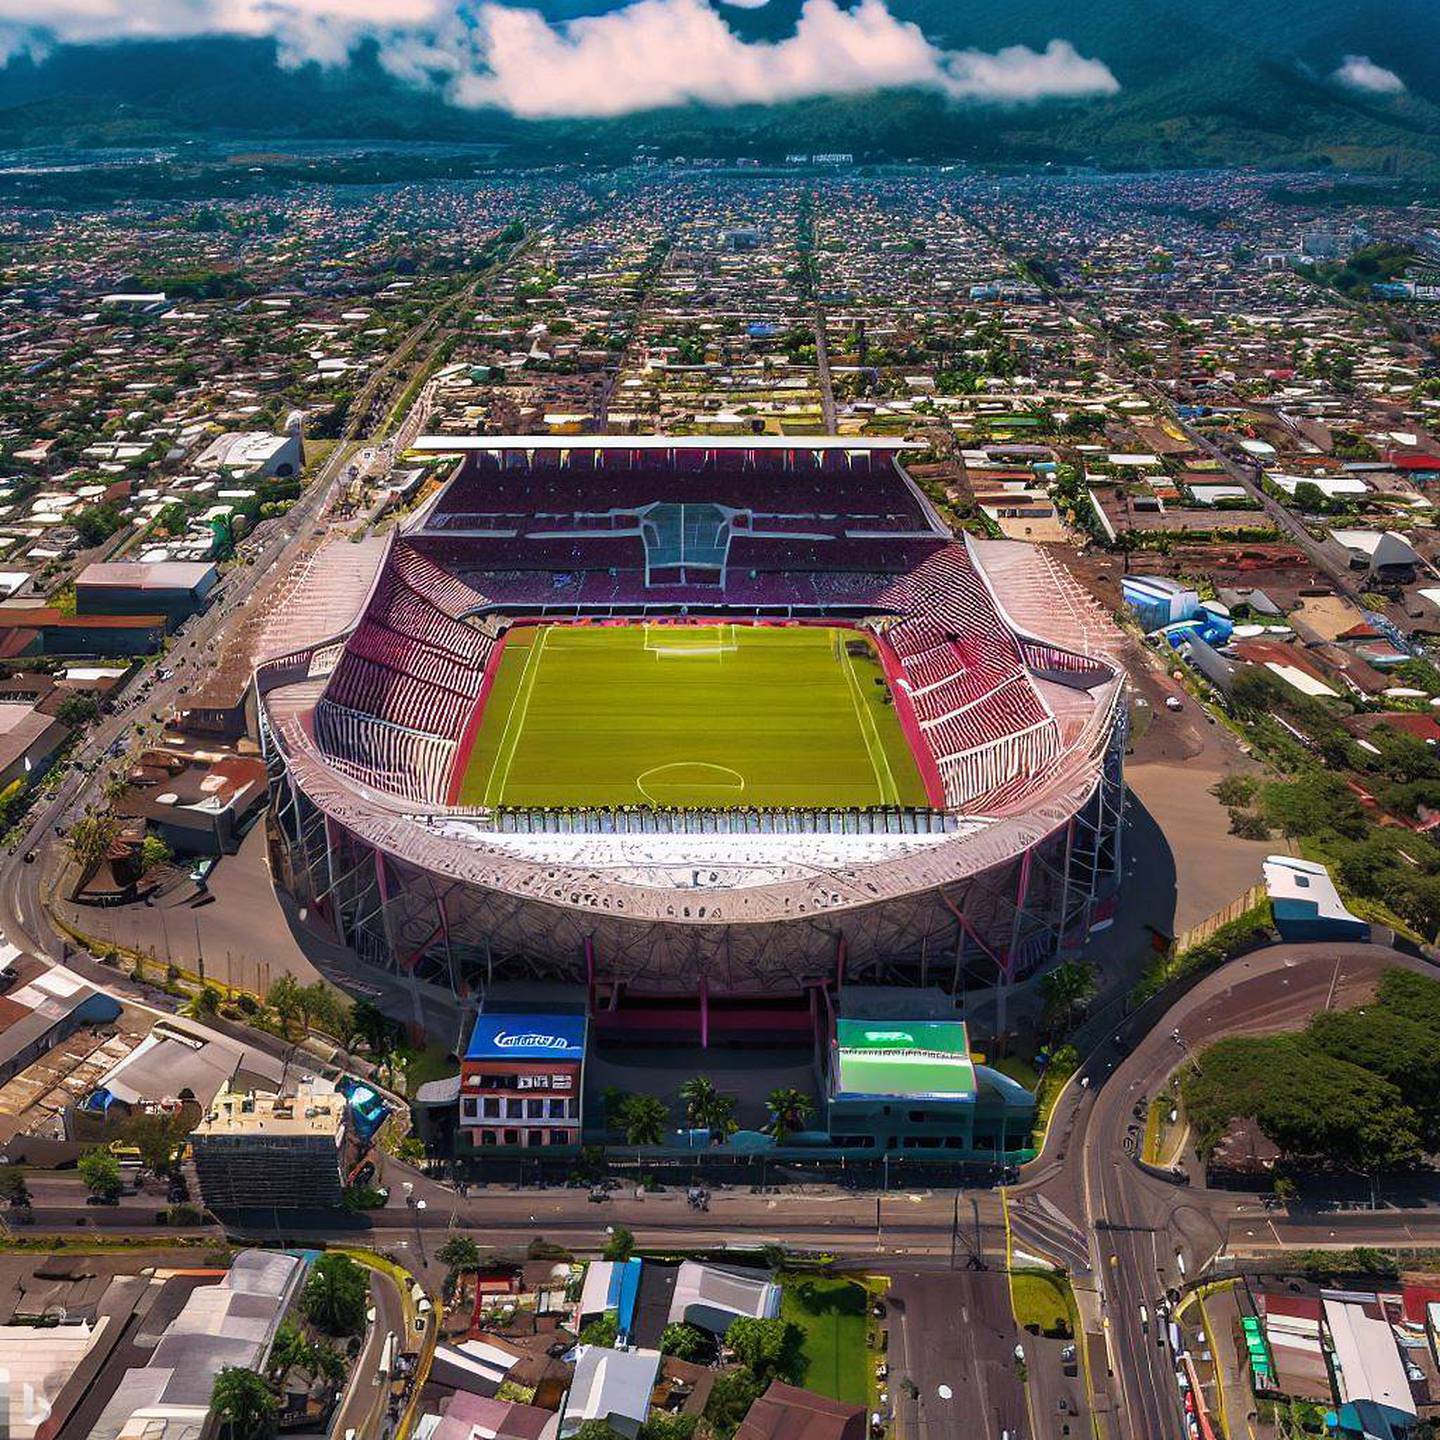 Estadio de Saprissa en el año 2073 según Bing Image Creator | El Financiero